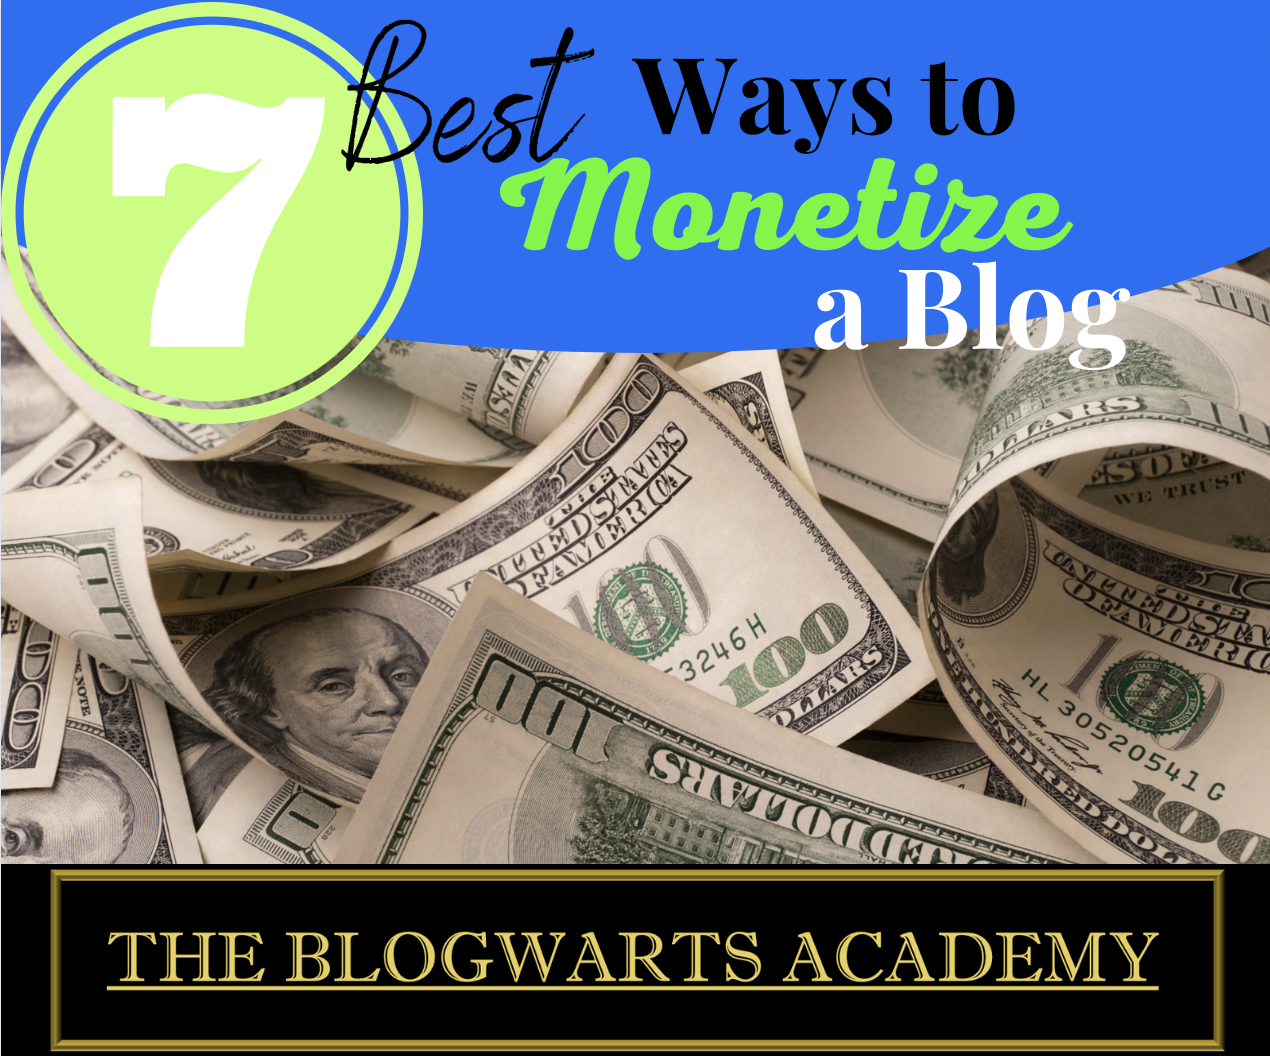 Best 7 Ways to Monetize a Blog - Blogwarts Academy